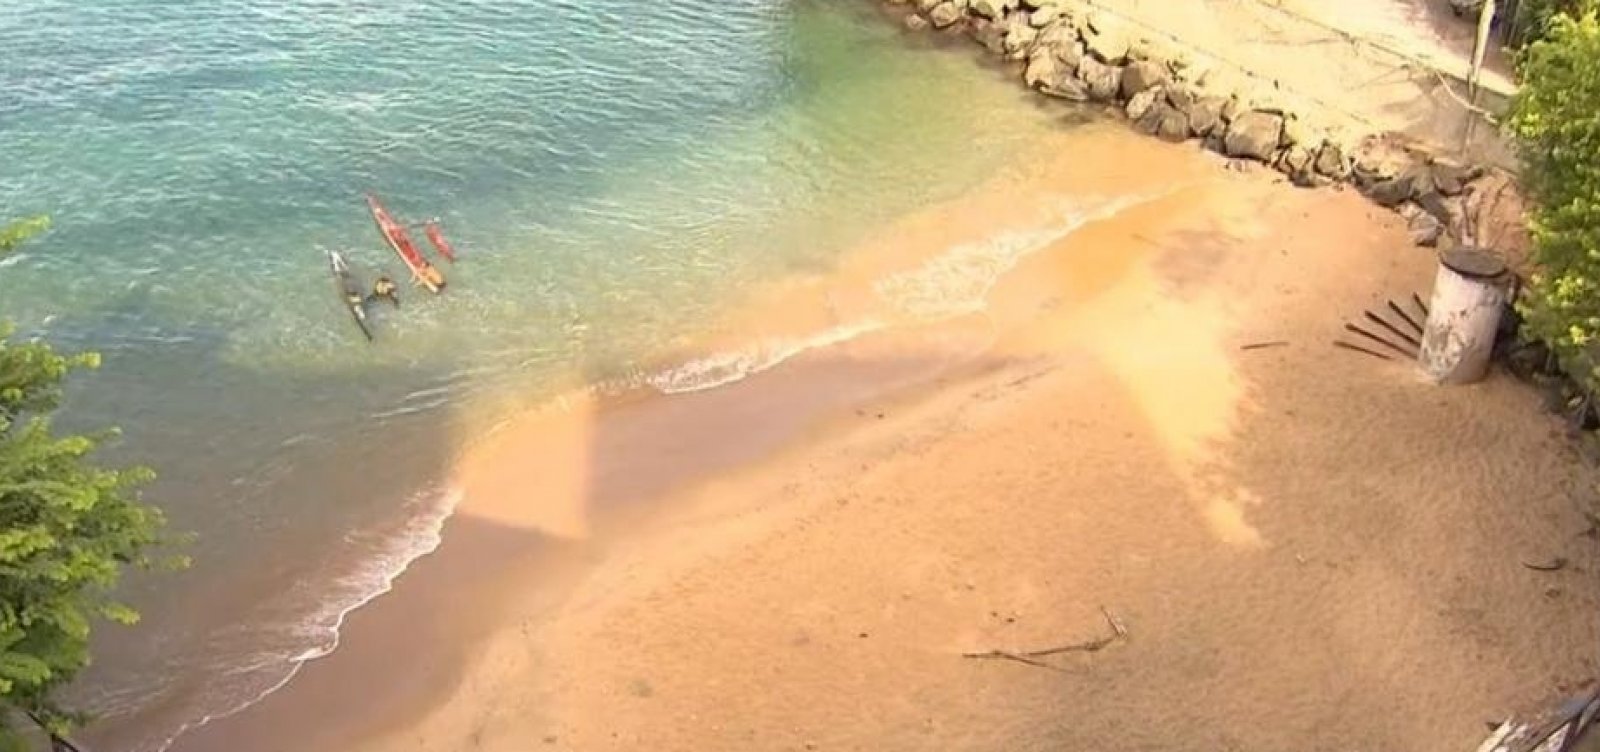 Após arrastão, comunidade recupera itens roubados em praia do MAM